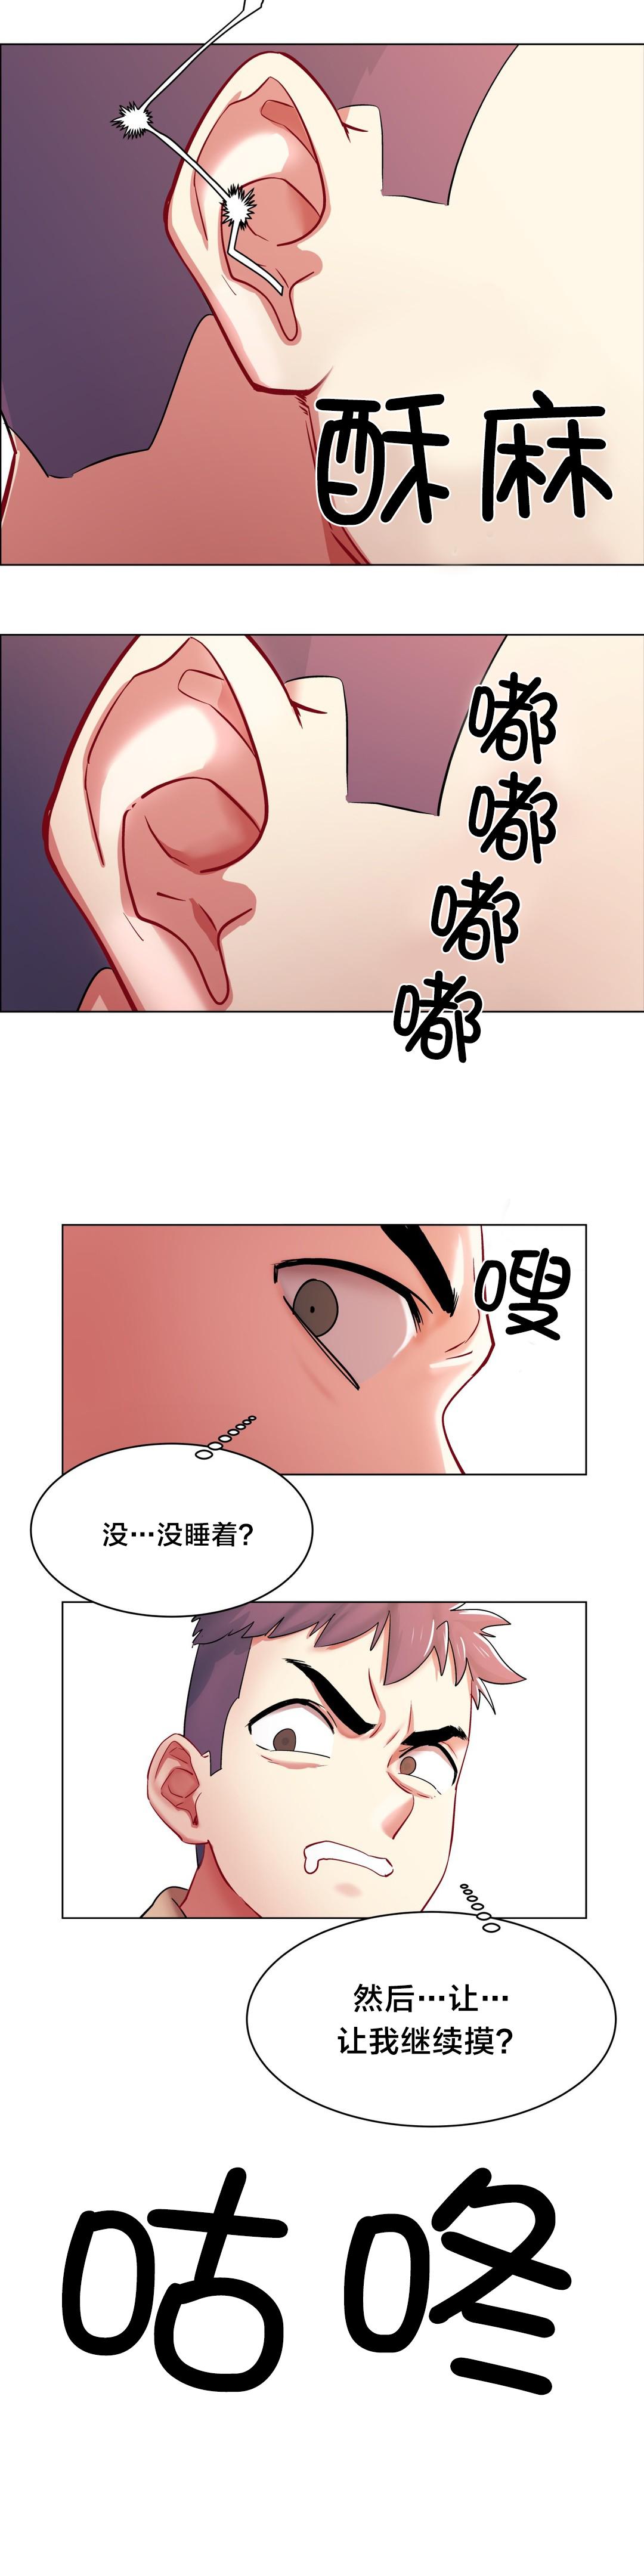 韩国污漫画 香艷小店 第4话 10